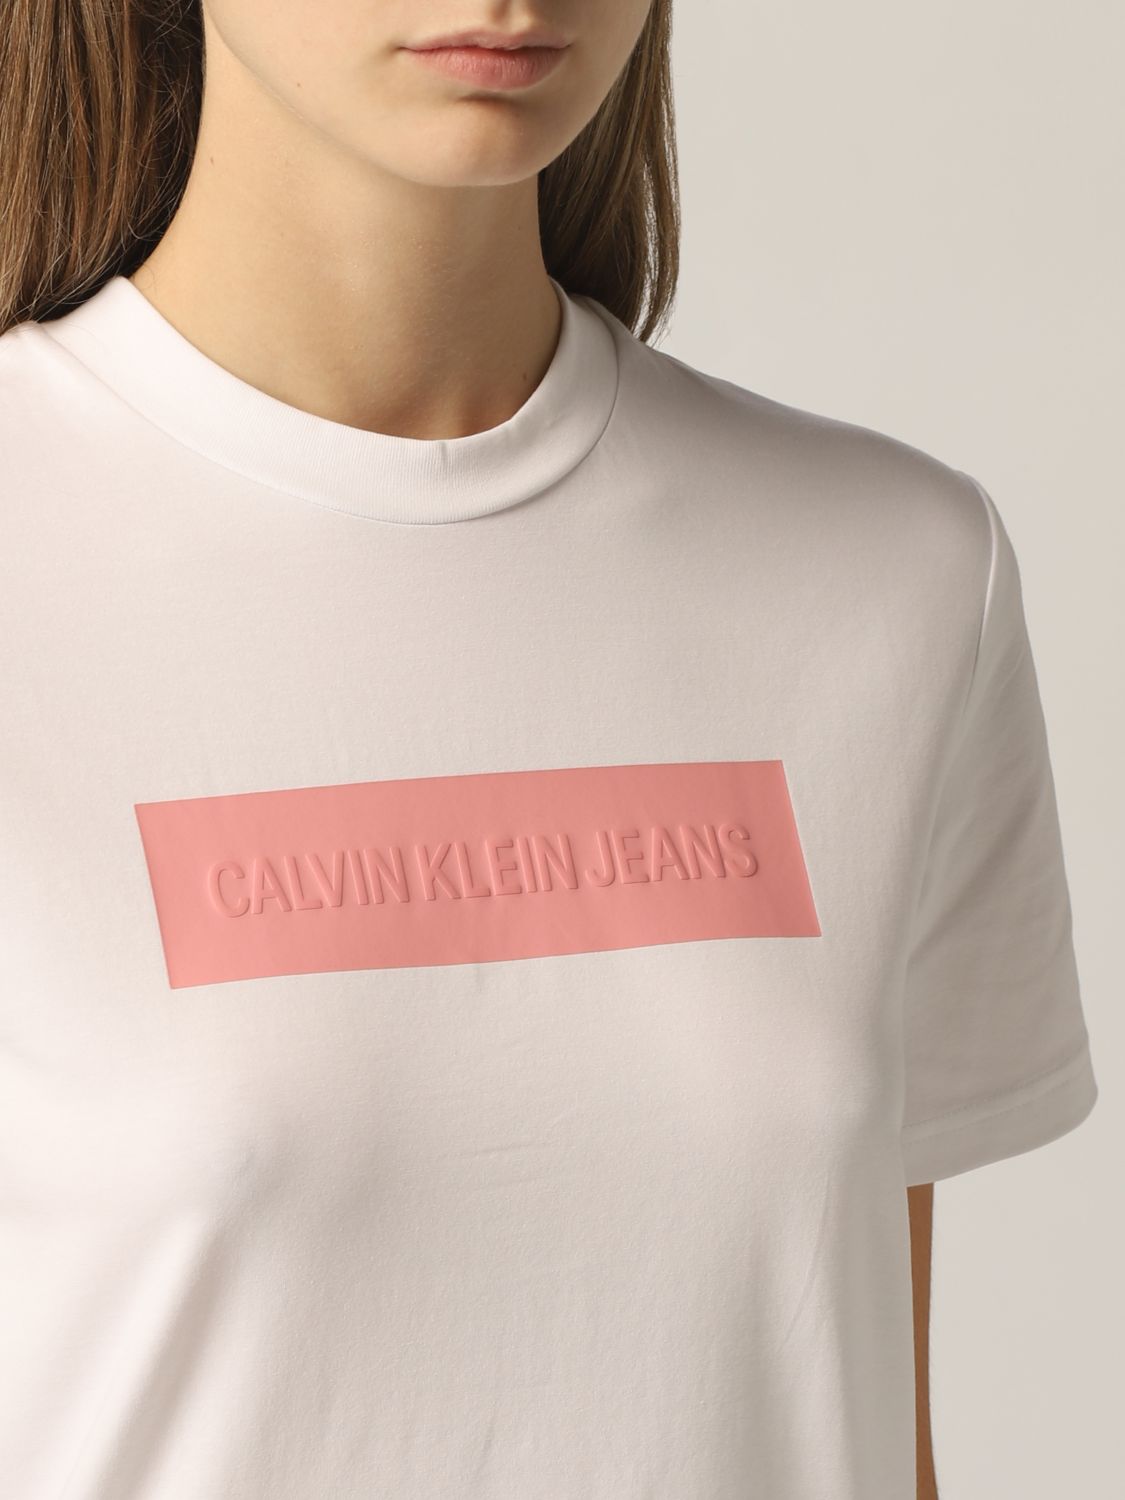 calvin klein shirt womens